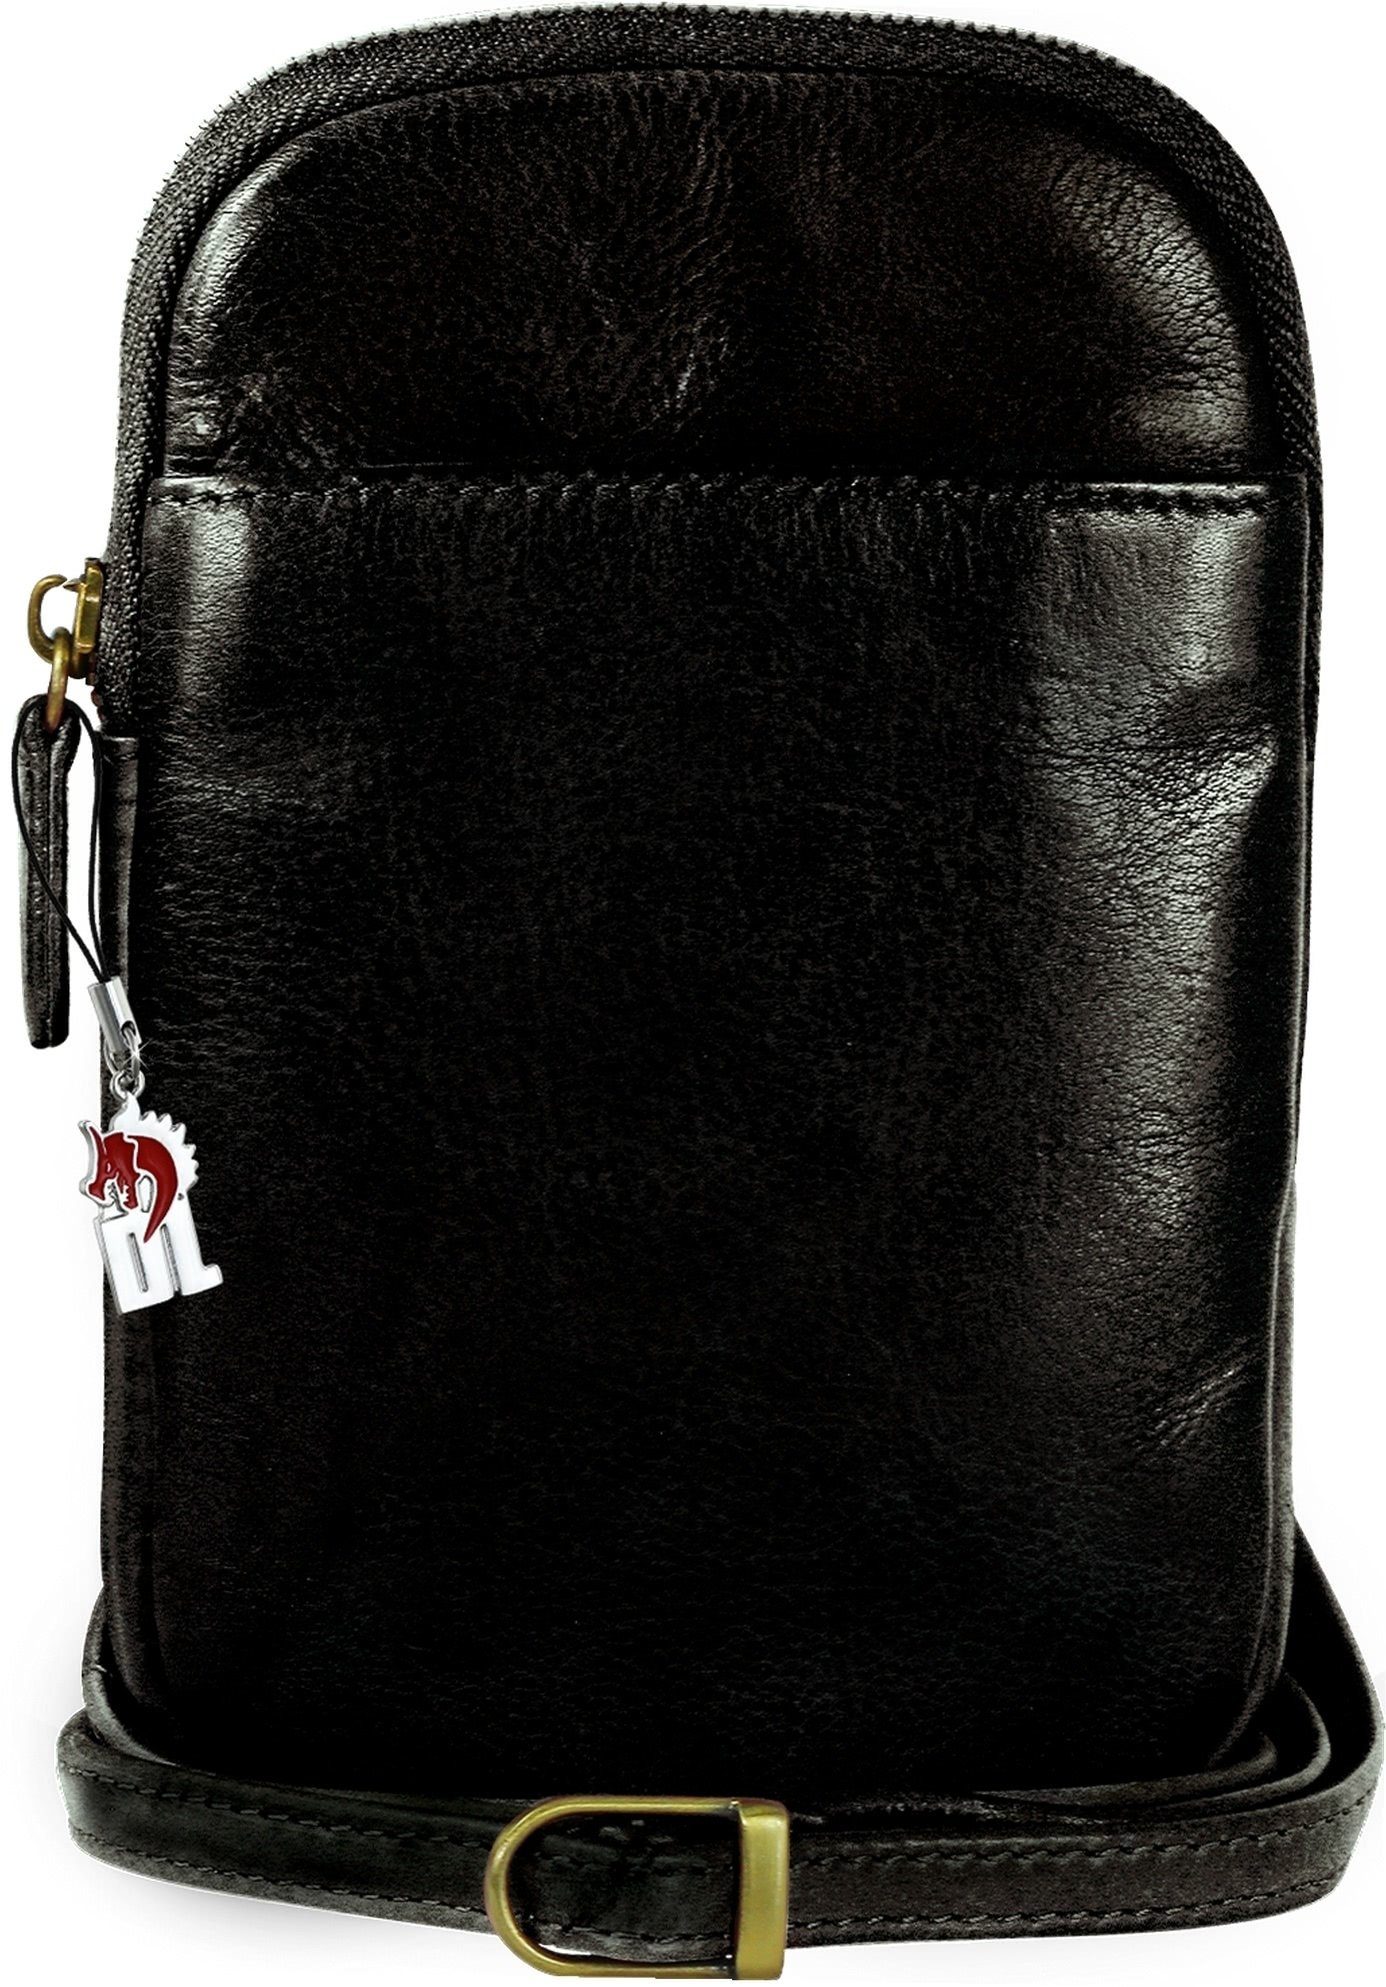 DrachenLeder Handtasche DrachenLeder Damen Handtasche Tasche (Handtasche), Damen, Herren Tasche aus Echtleder in schwarz, ca. 13cm Breite